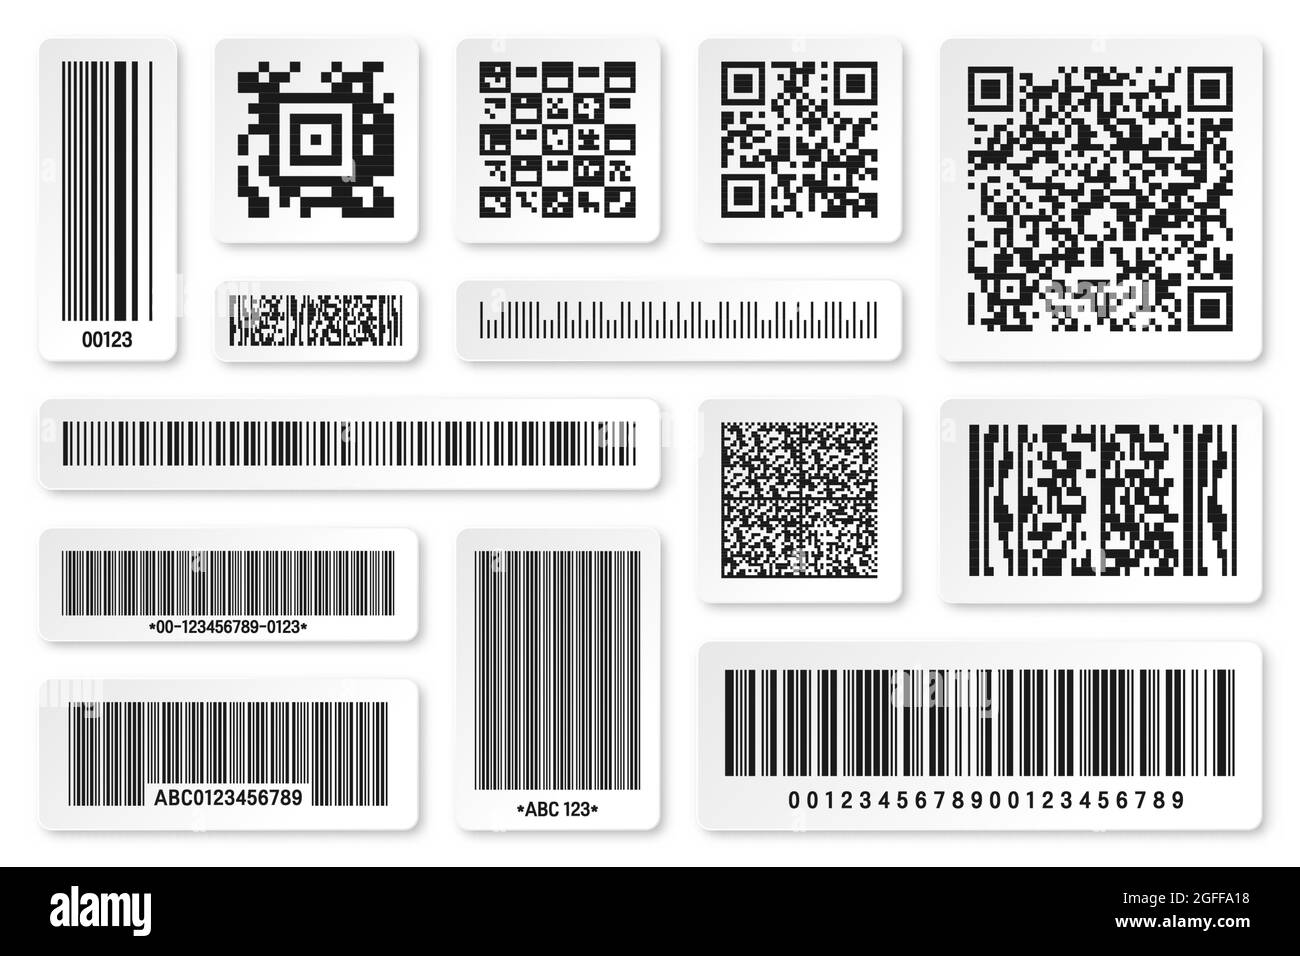 Qr code store Foto e Immagini Stock in Bianco e Nero - Pagina 3 - Alamy